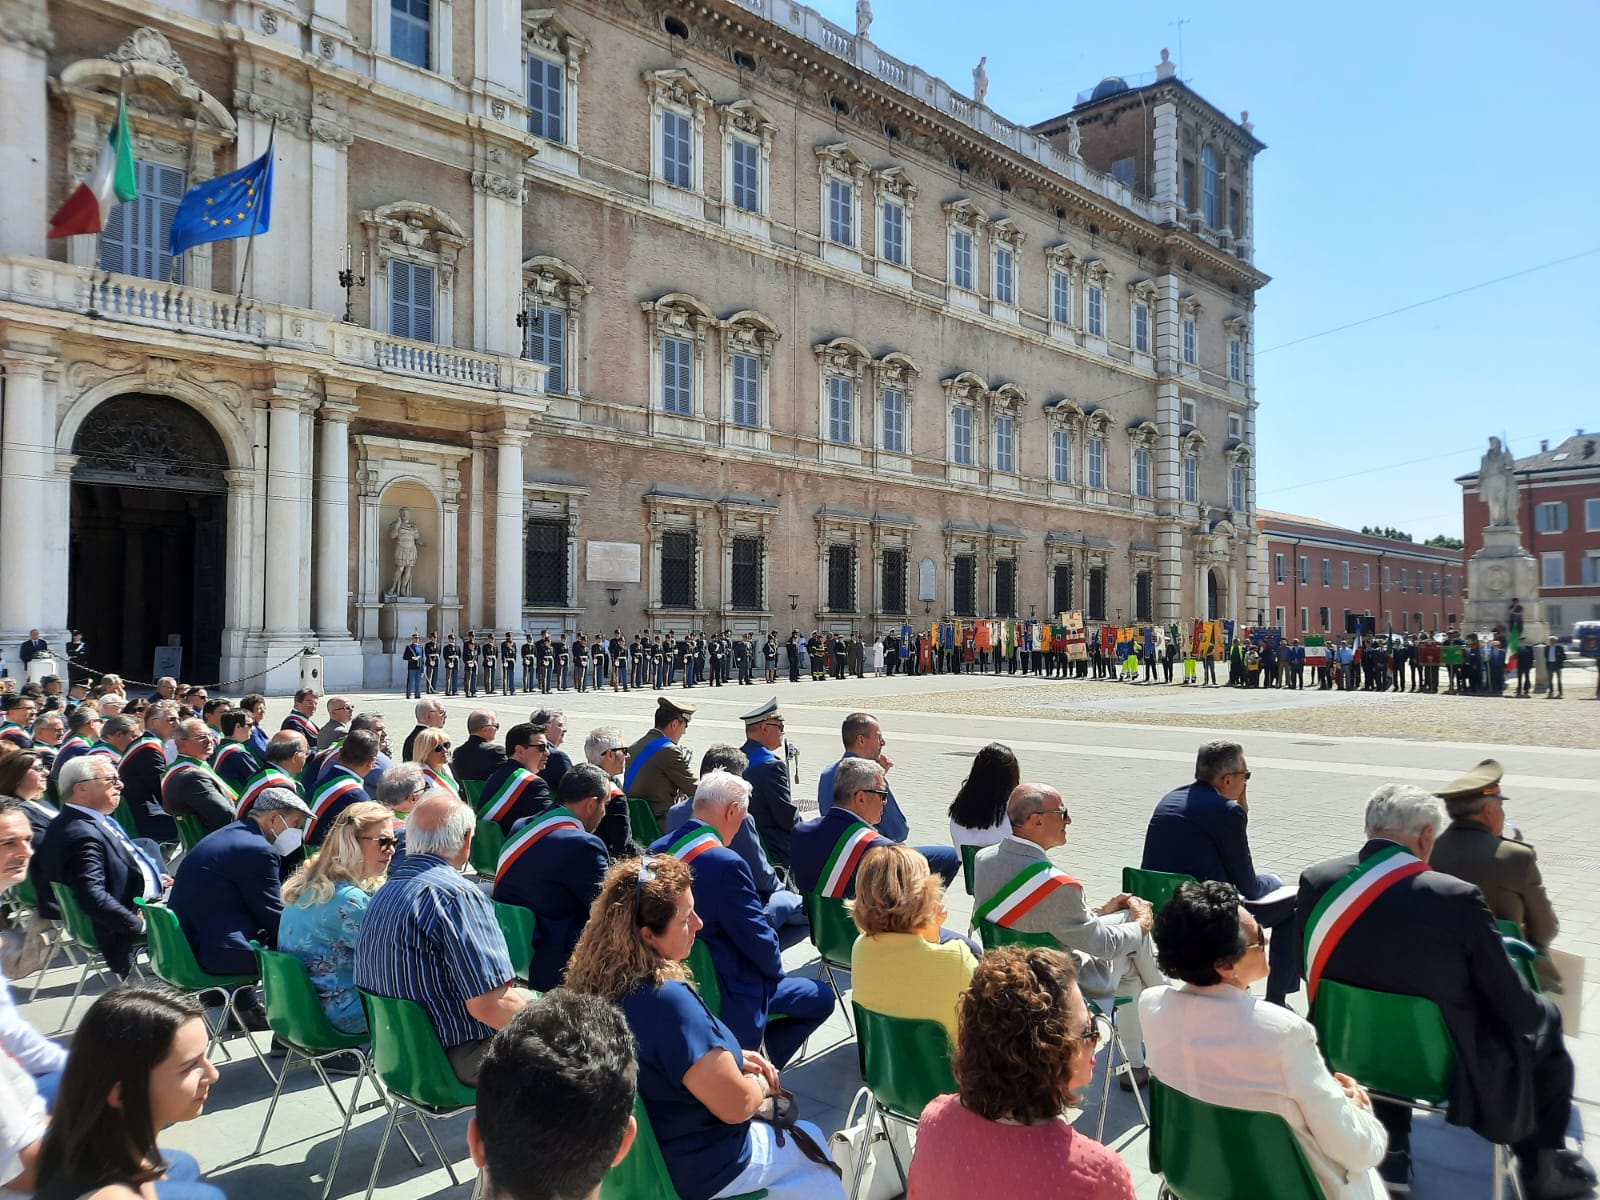  Prefetto Camporota: “il 2 giugno del ’46 gli italiani siglarono un accordo di convivenza civile” (video)